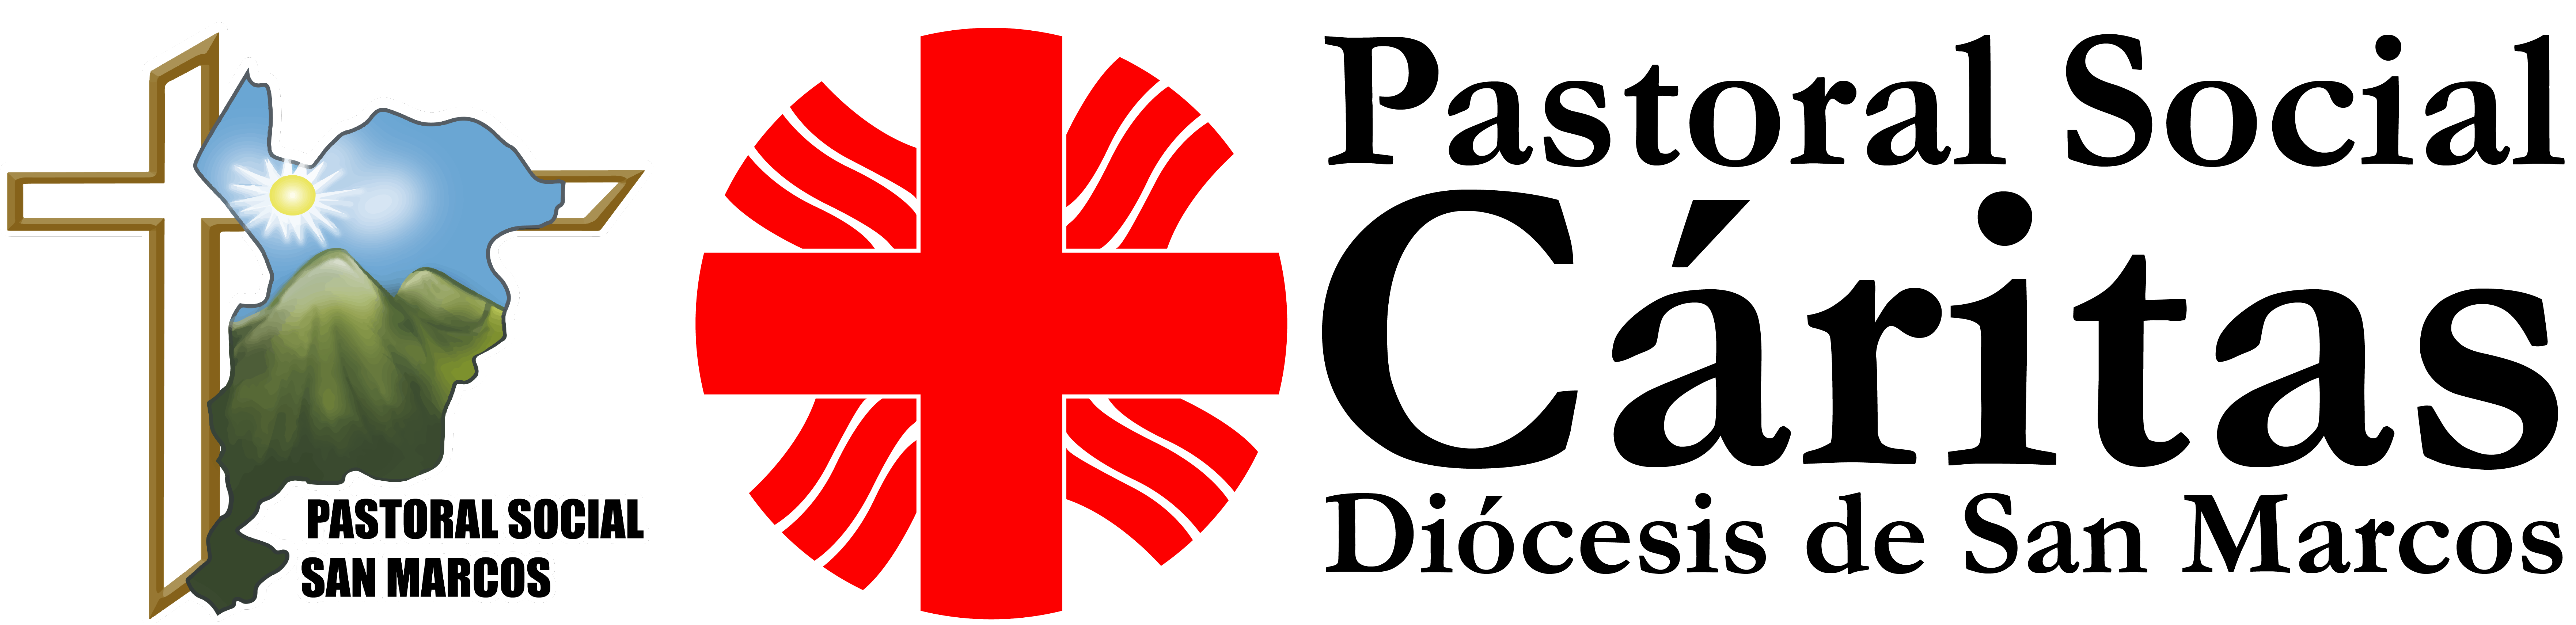 PS Logo Caritas1